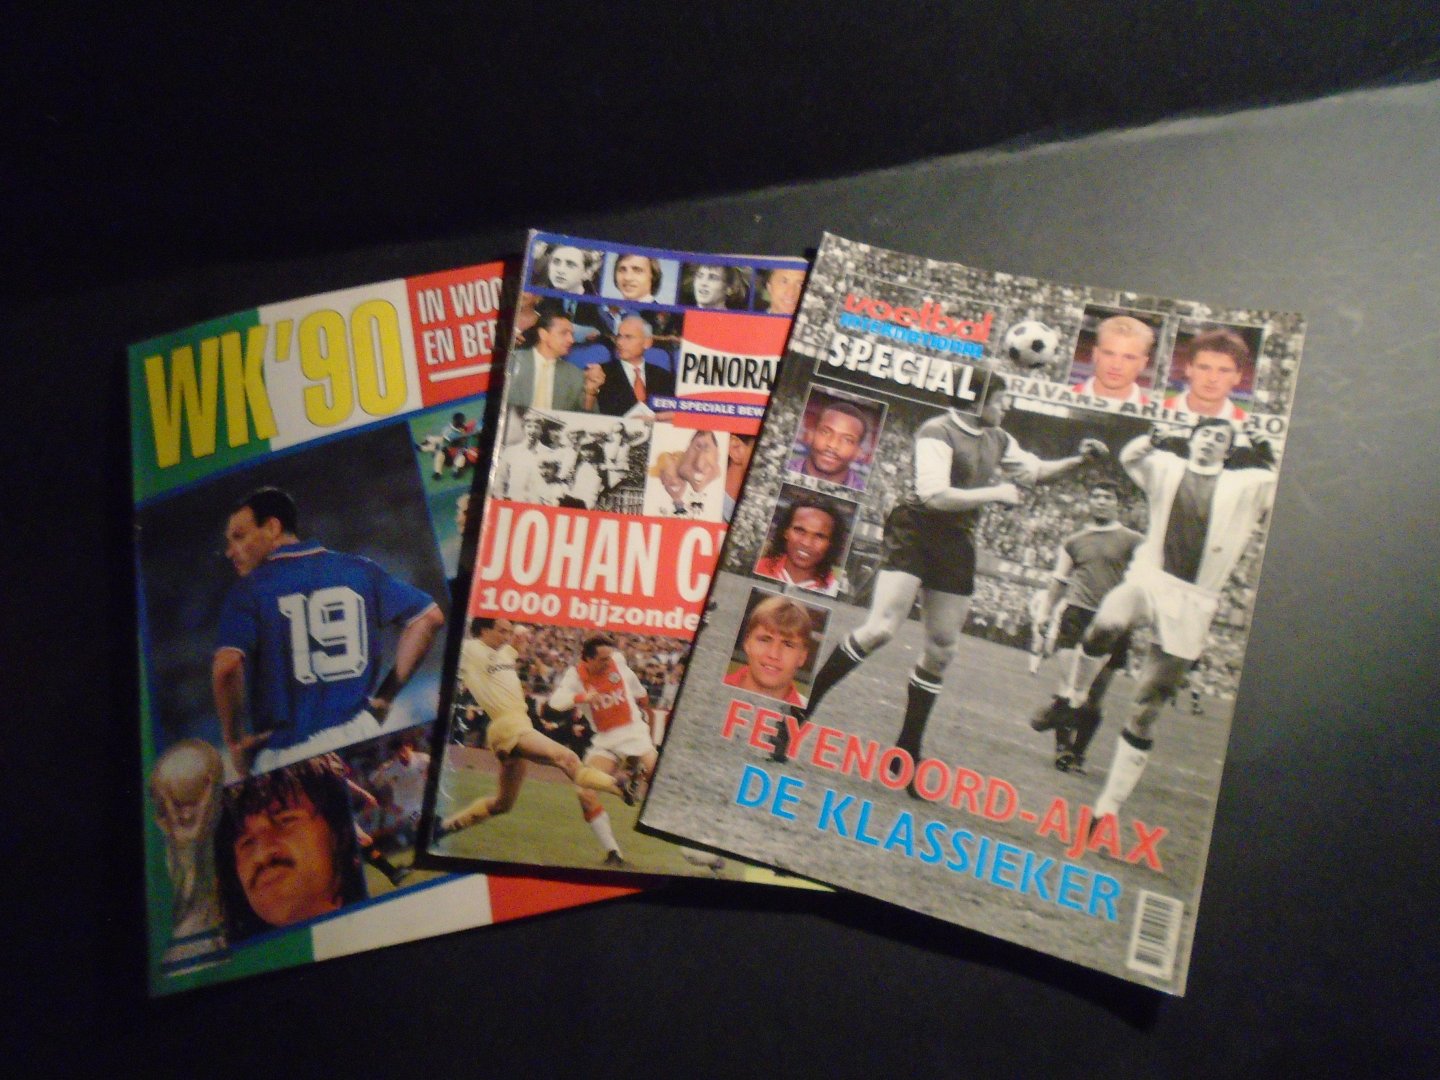 Diversen - Serie: Feyenoord-Ajax. De klassieker.1991-192--2---Johan Cruijff 50, 1000 bijzondere ontmoetingen.--3-- WK,90 in woord en beeld